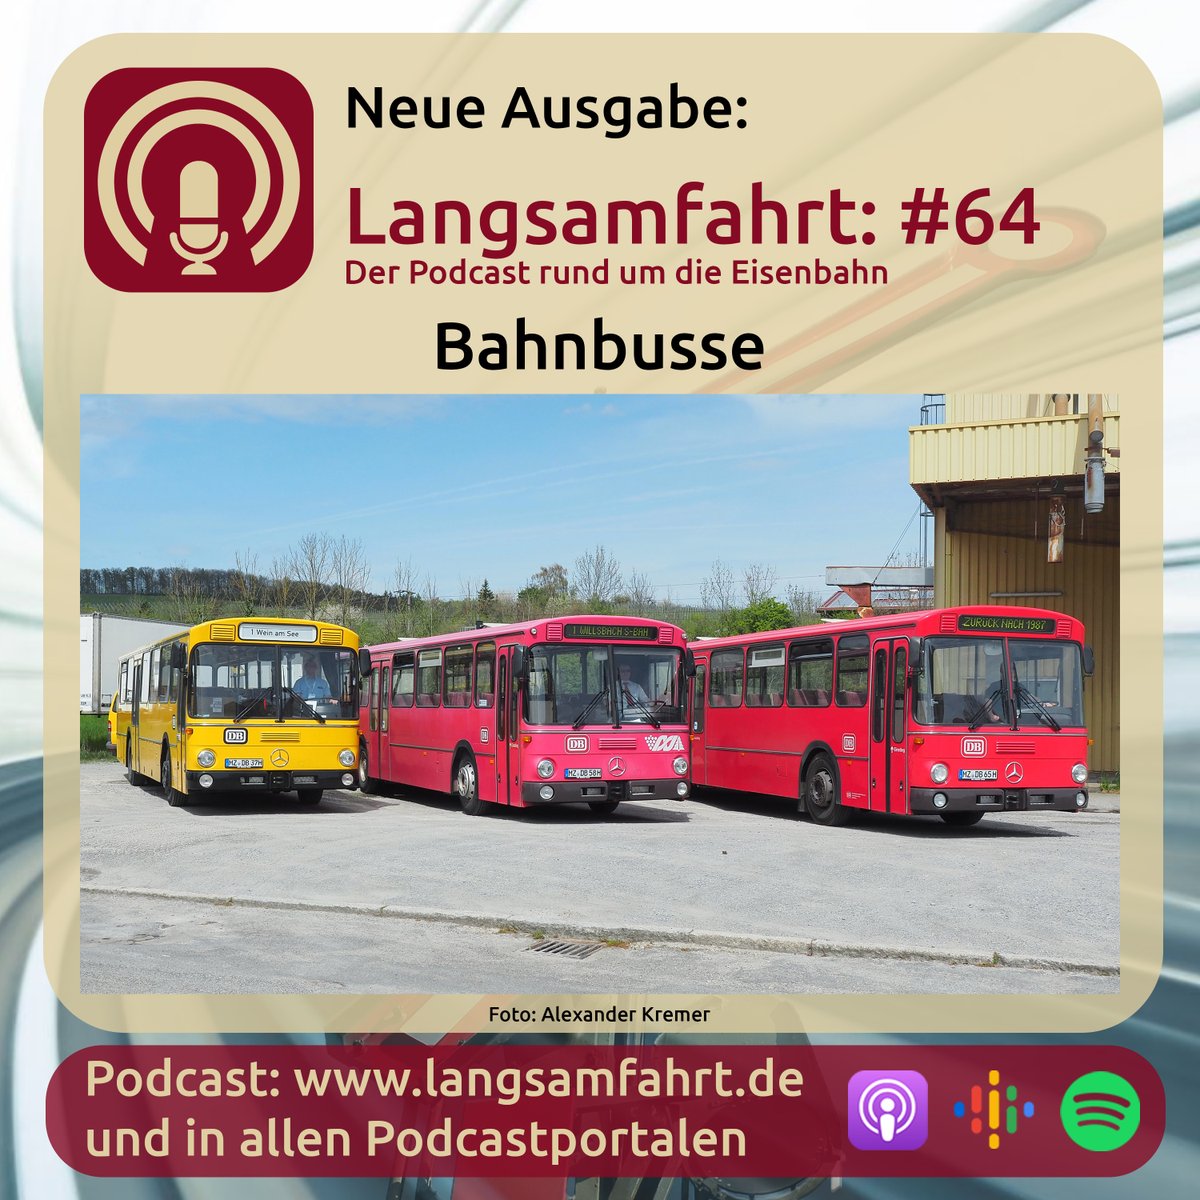 Was man heute als 'Überlandbusse' bezeichnet, waren früher die Bahnbusse. Die Bundesbahn betrieb, neben ihrem Bahnverkehr, auch diverse Buslinien. In der neuen Ausgabe geht es um Bahnbusse.

Podcast: langsamfahrt.de/64/

#bahn #podcast #bundesbahn #bahnbus